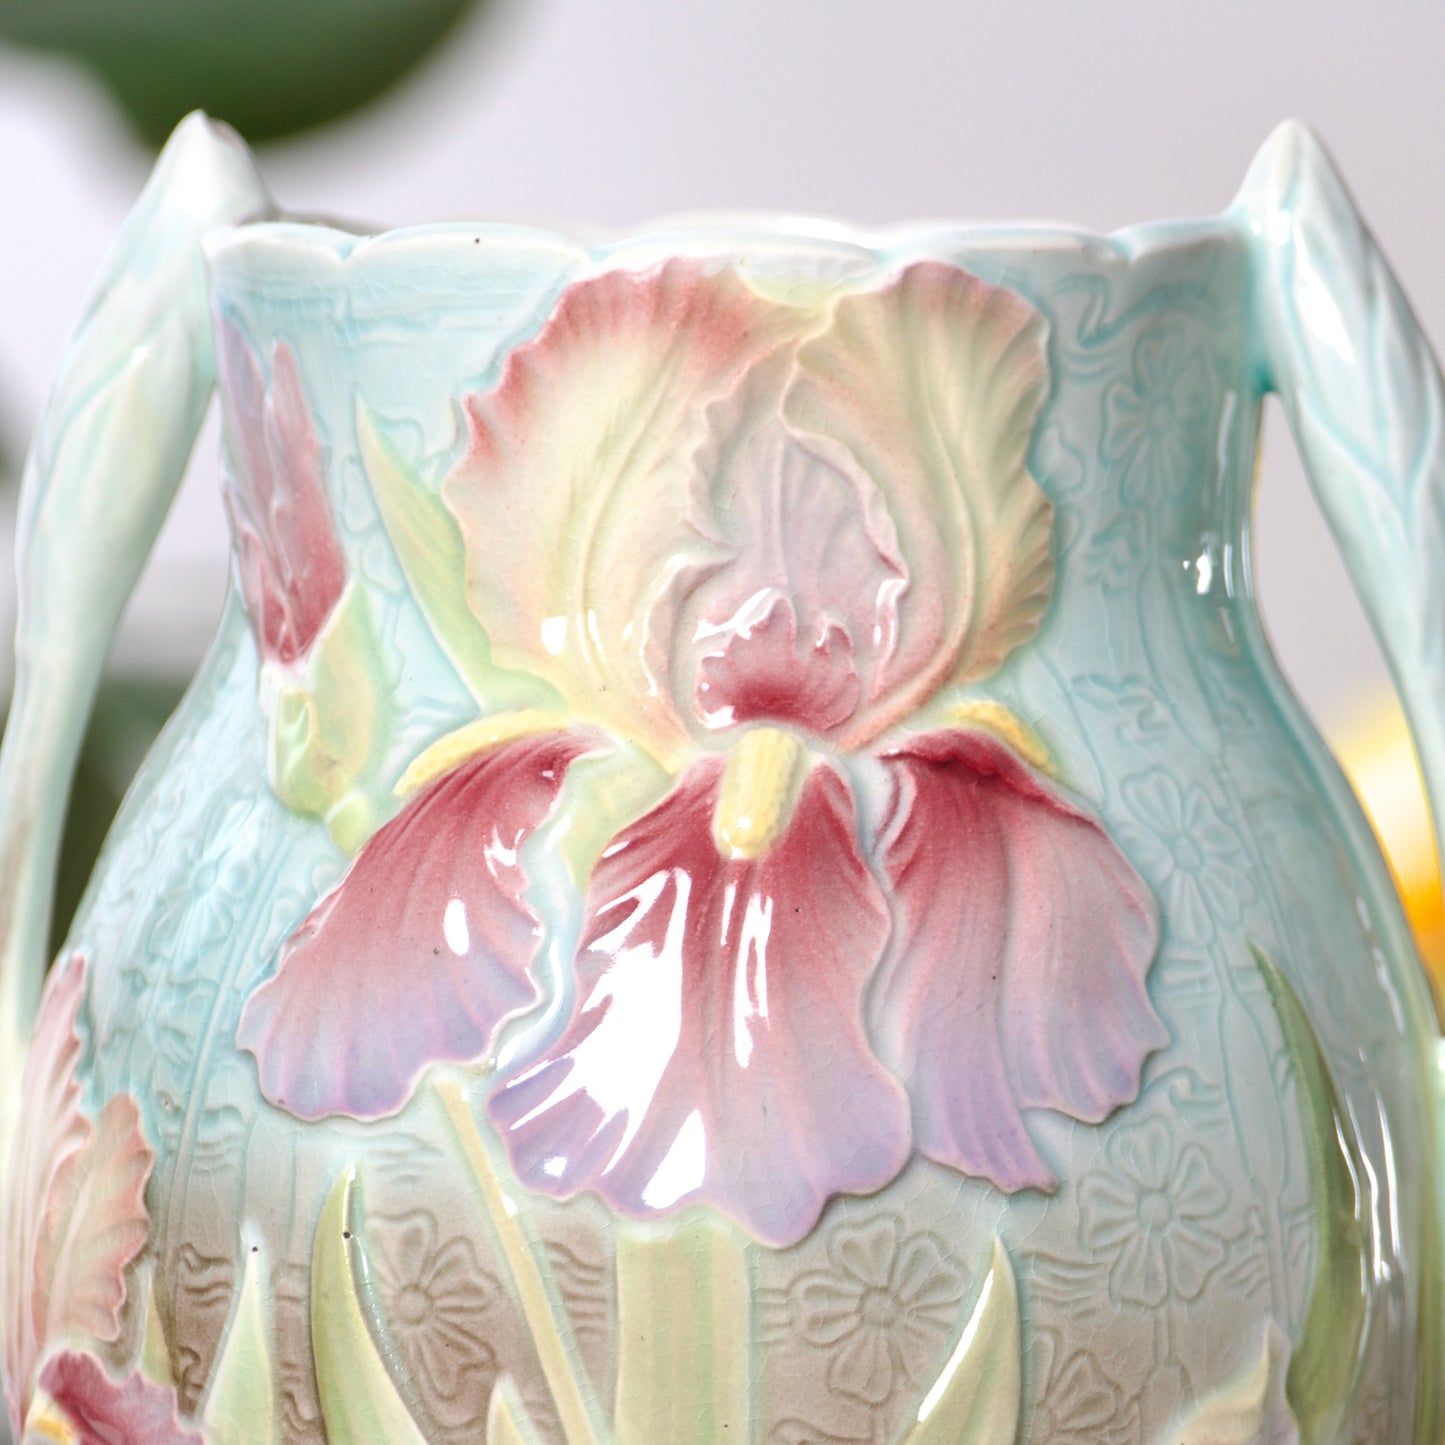 Grand vase amphore St Clément en barbotine Art Nouveau